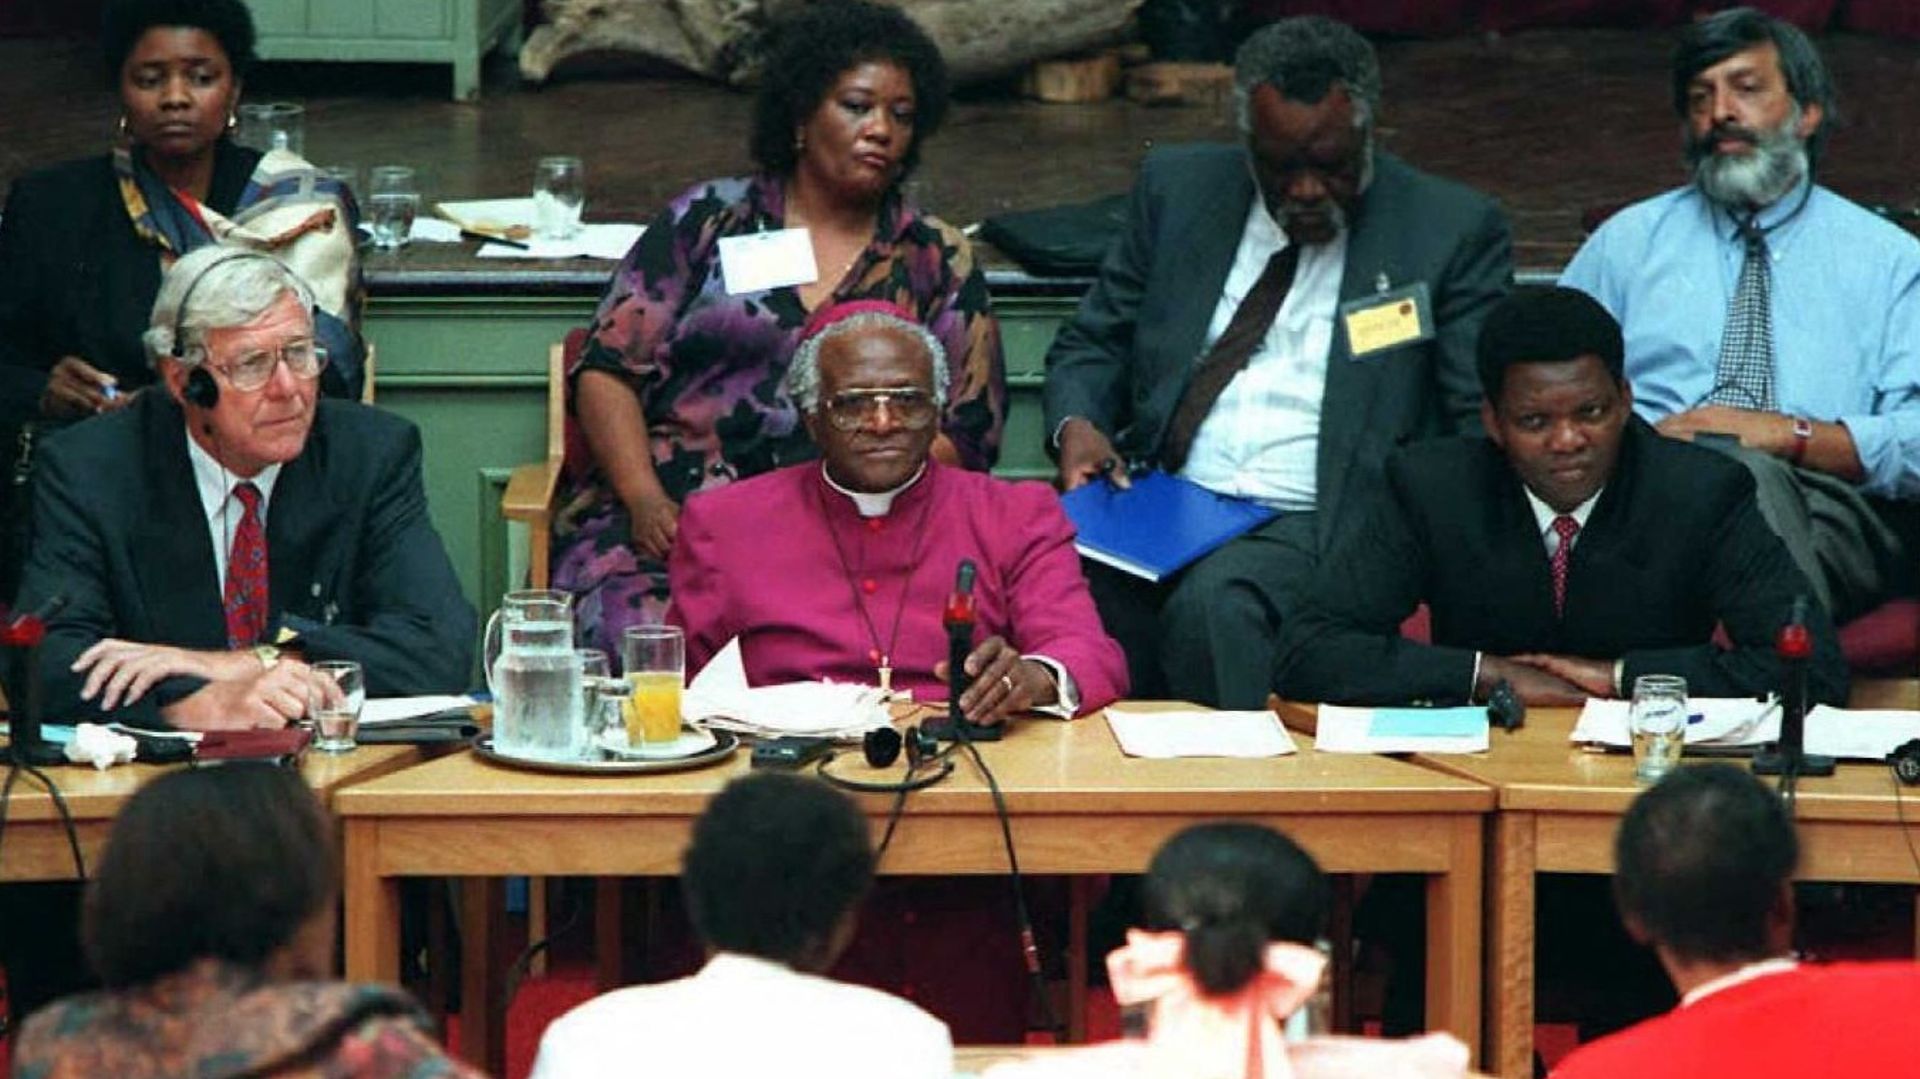 Desmond Tutu et d’autres commissaires écoutent les témoignages d’actes de violence commis à l’époque de l’apartheid lors de l’ouverture de la Commission vérité et réconciliation le 15 avril à East London en Afrique du Sud.